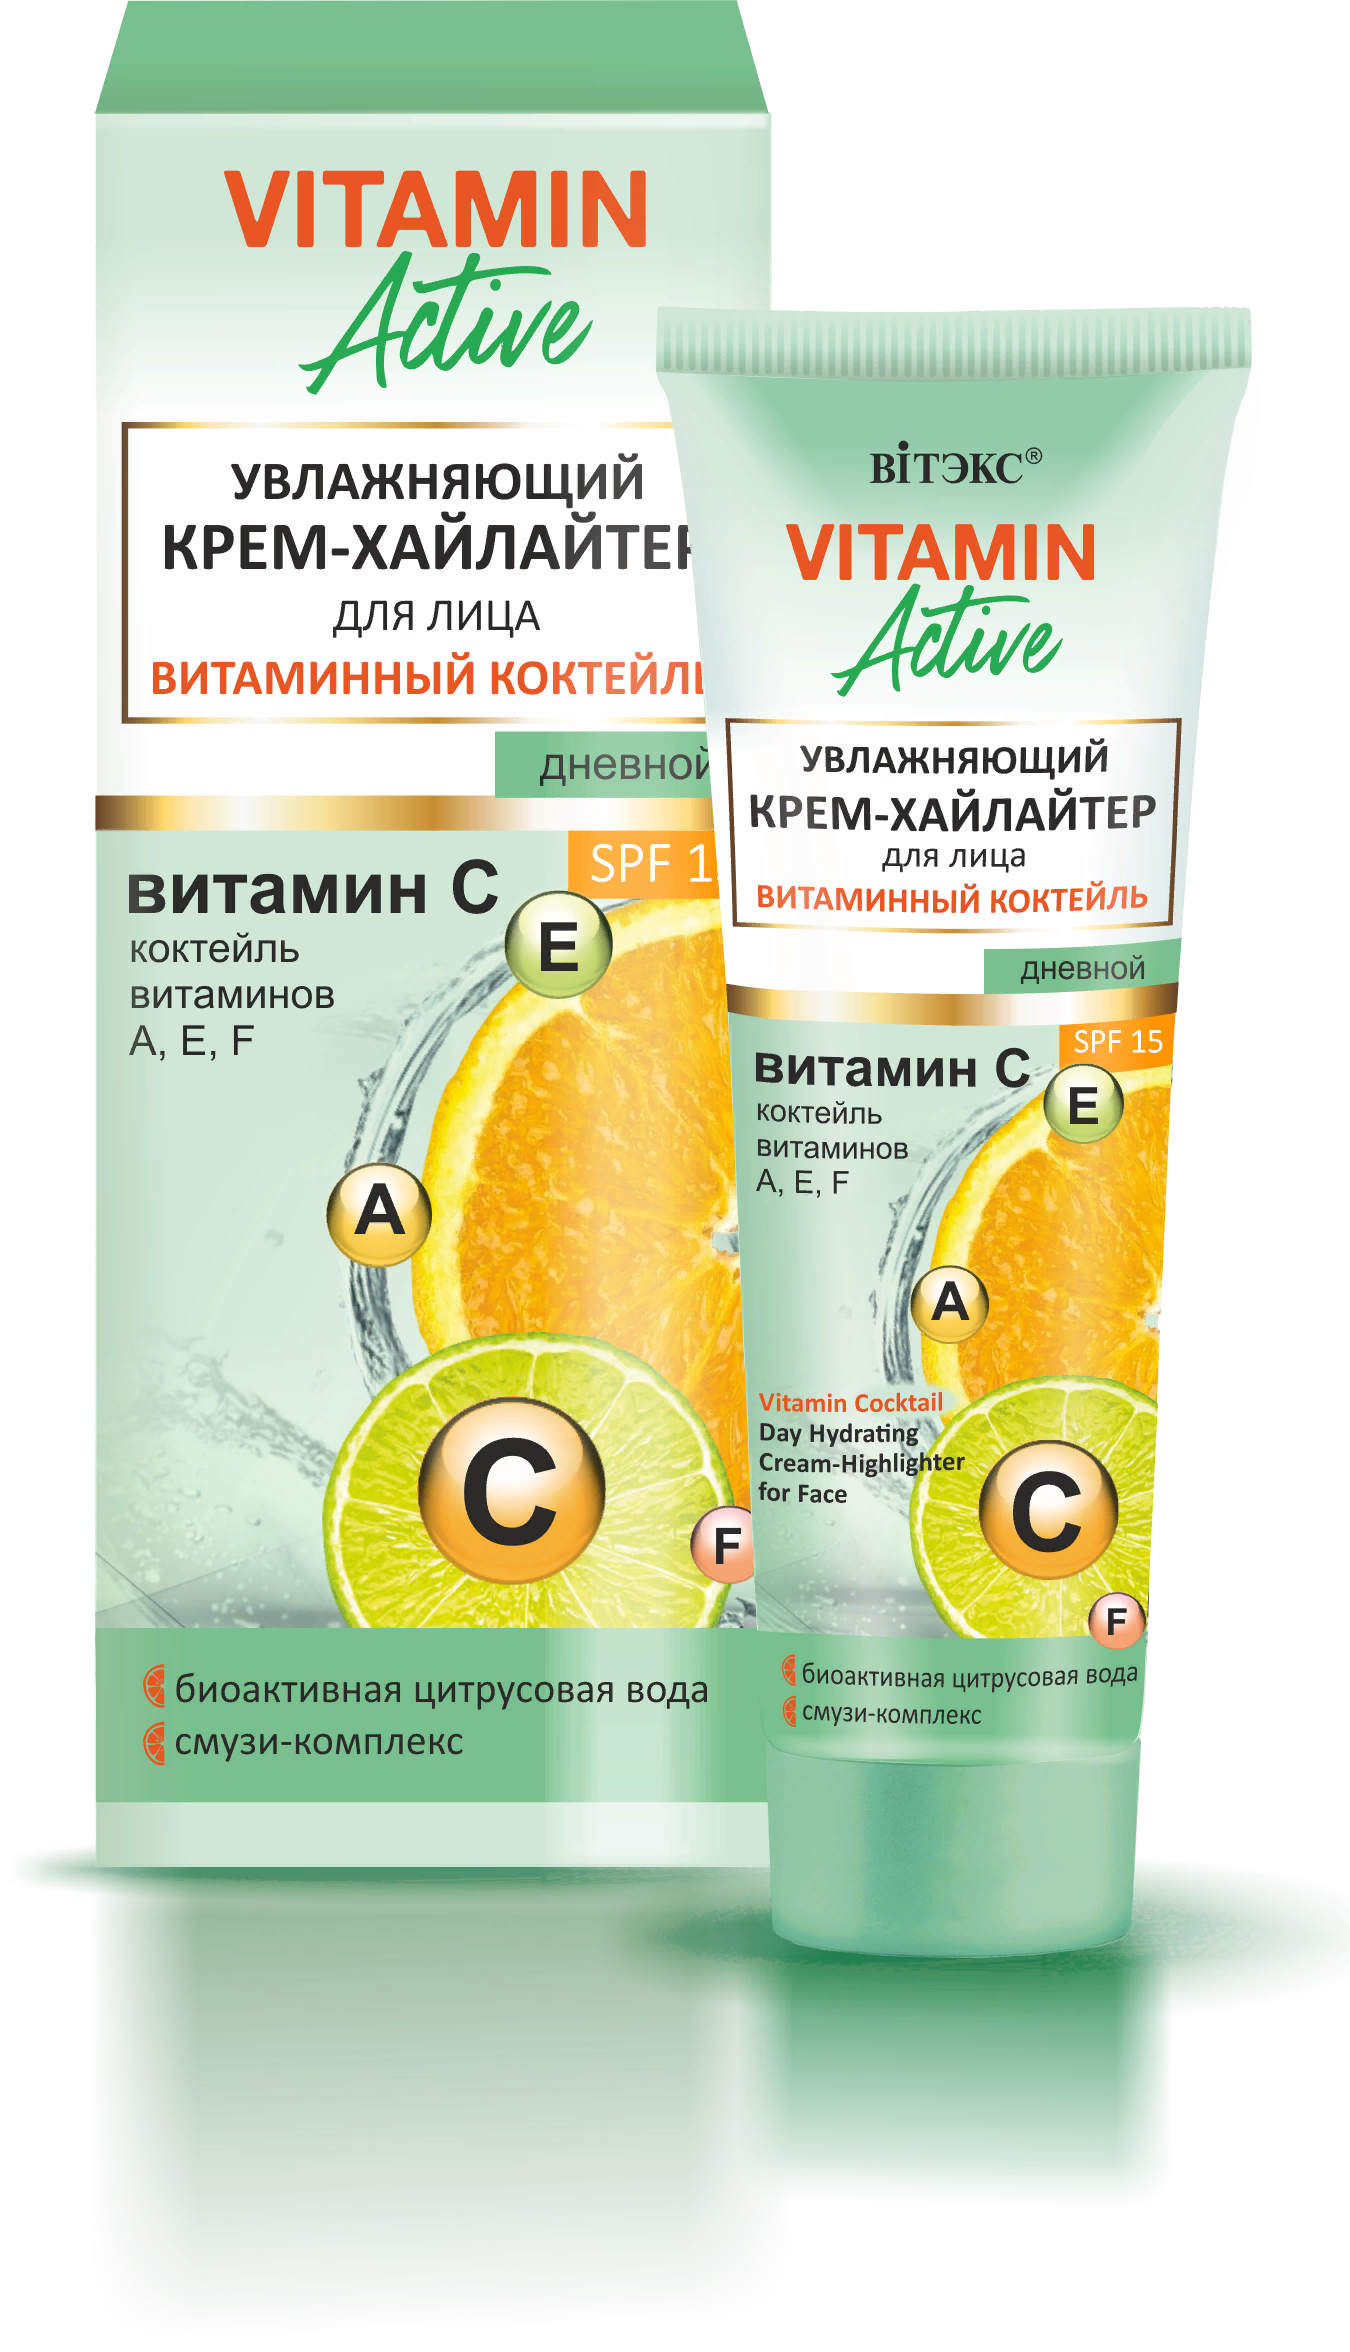 Крем-хайлайтер для лица дневной увлажняющий витаминный коктейль SPF 15 Vitamin Active, 40мл Belita